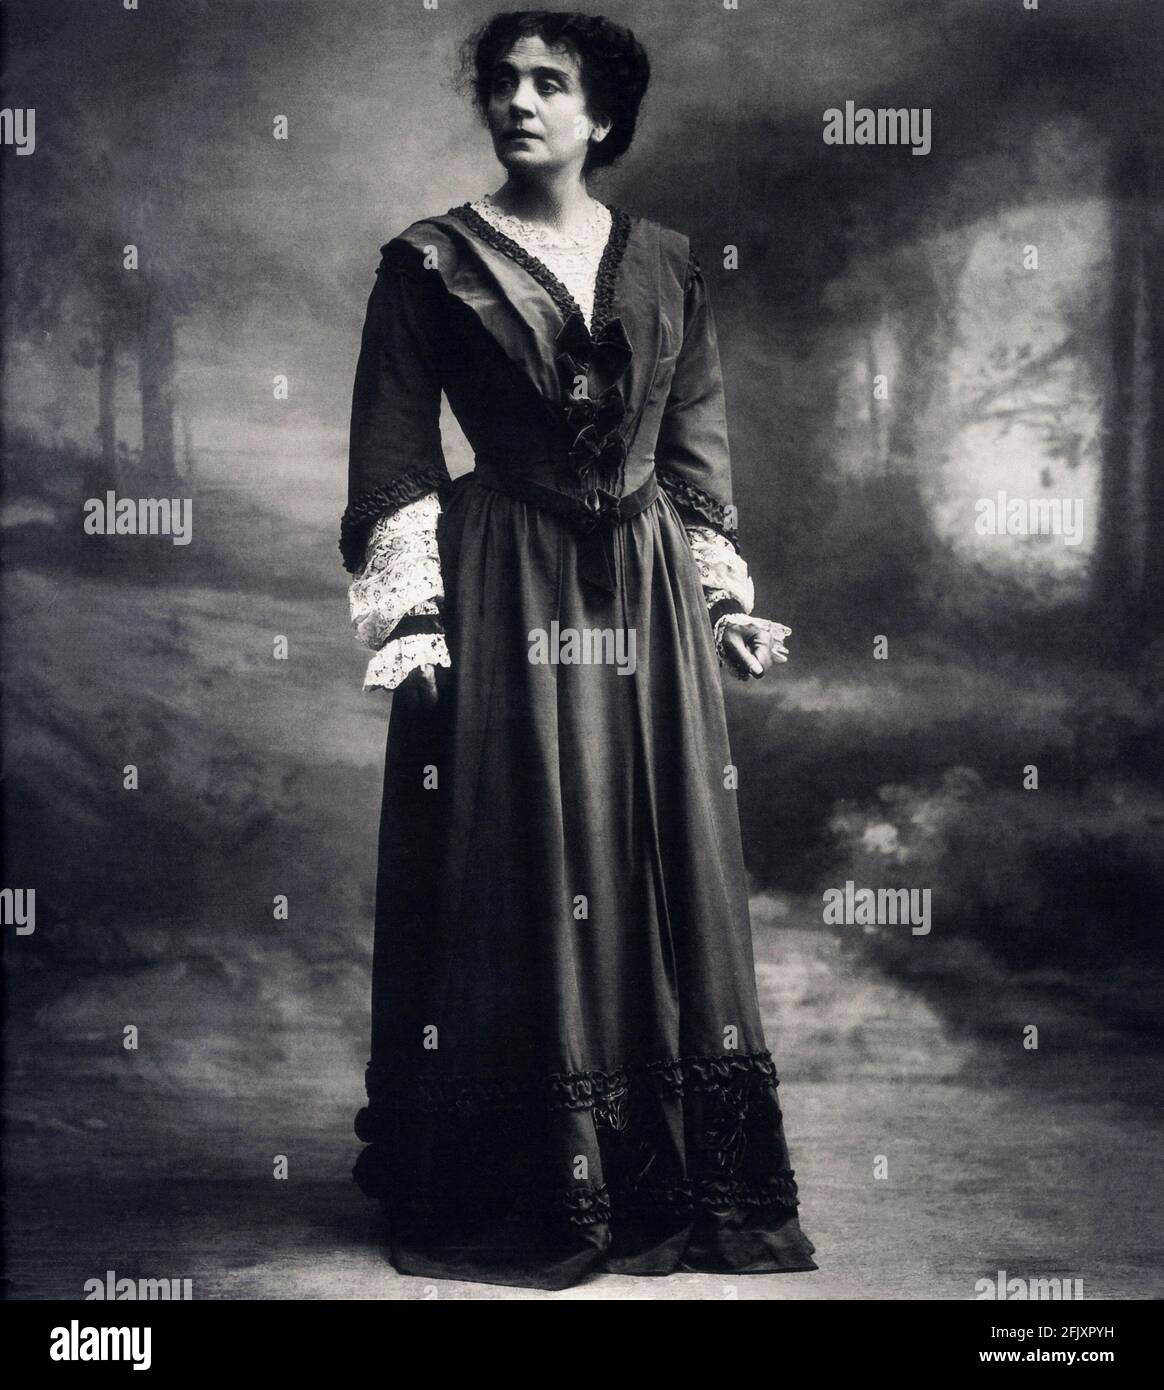 1901 ca., ITALIA : la celebrata attrice drammatica italiana ELEONORA DUSE ( 1858 - 1924 ) , al tempo DI FRANCESCA da RIMINI stregata dal suo amante Gabriele D' ANNUNZIO - TEATRO - TEATRO - DRAMMA - attrice - ritratto - ritratto - chignon - DANNUNZIO --- Archivio GBB Foto Stock